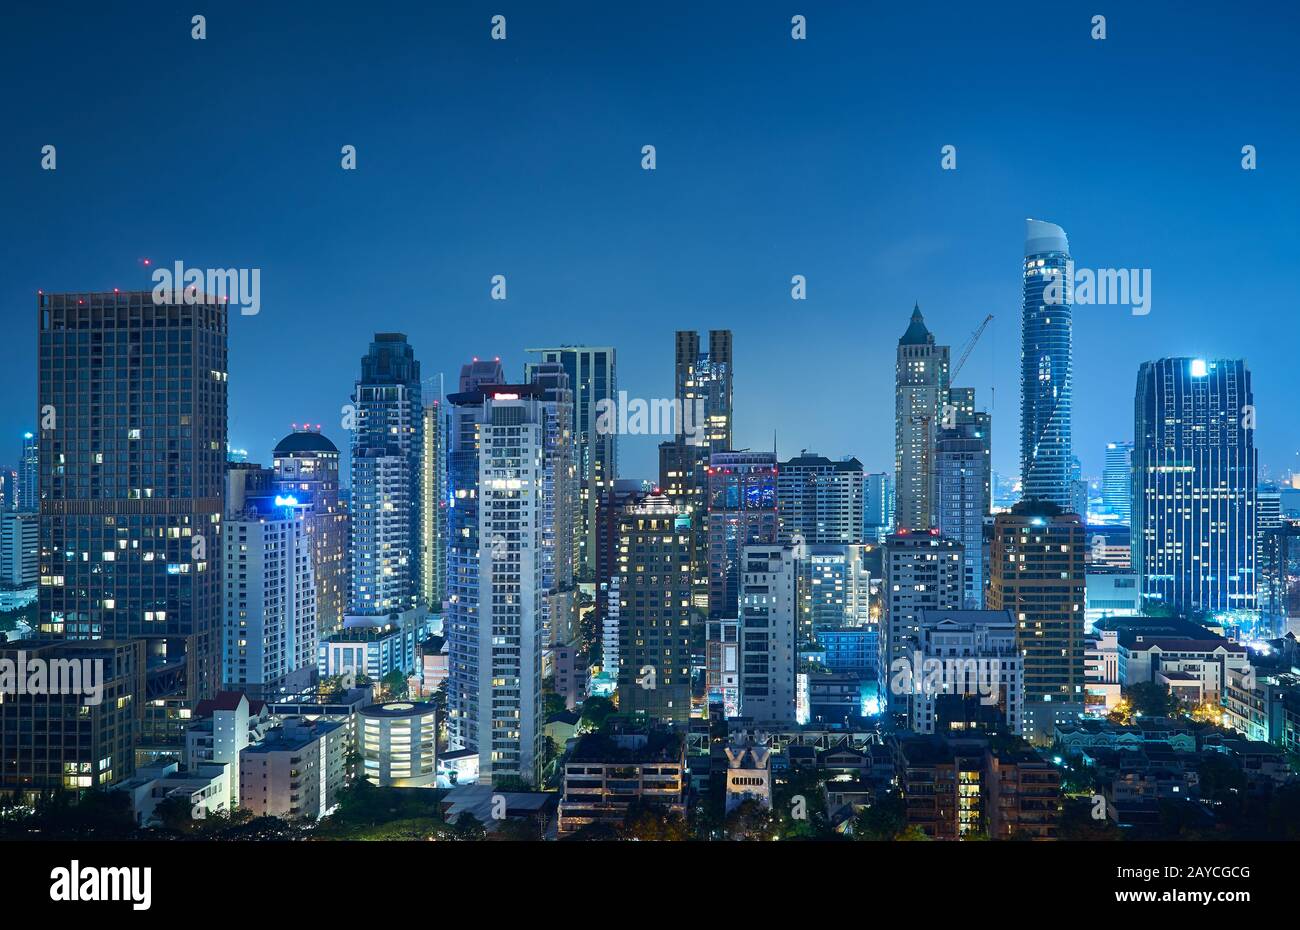 Vue nocturne de Bangkok immeuble moderne d'affaires de bureau et gratte-ciel élevé dans le quartier des affaires de Bangkok Banque D'Images